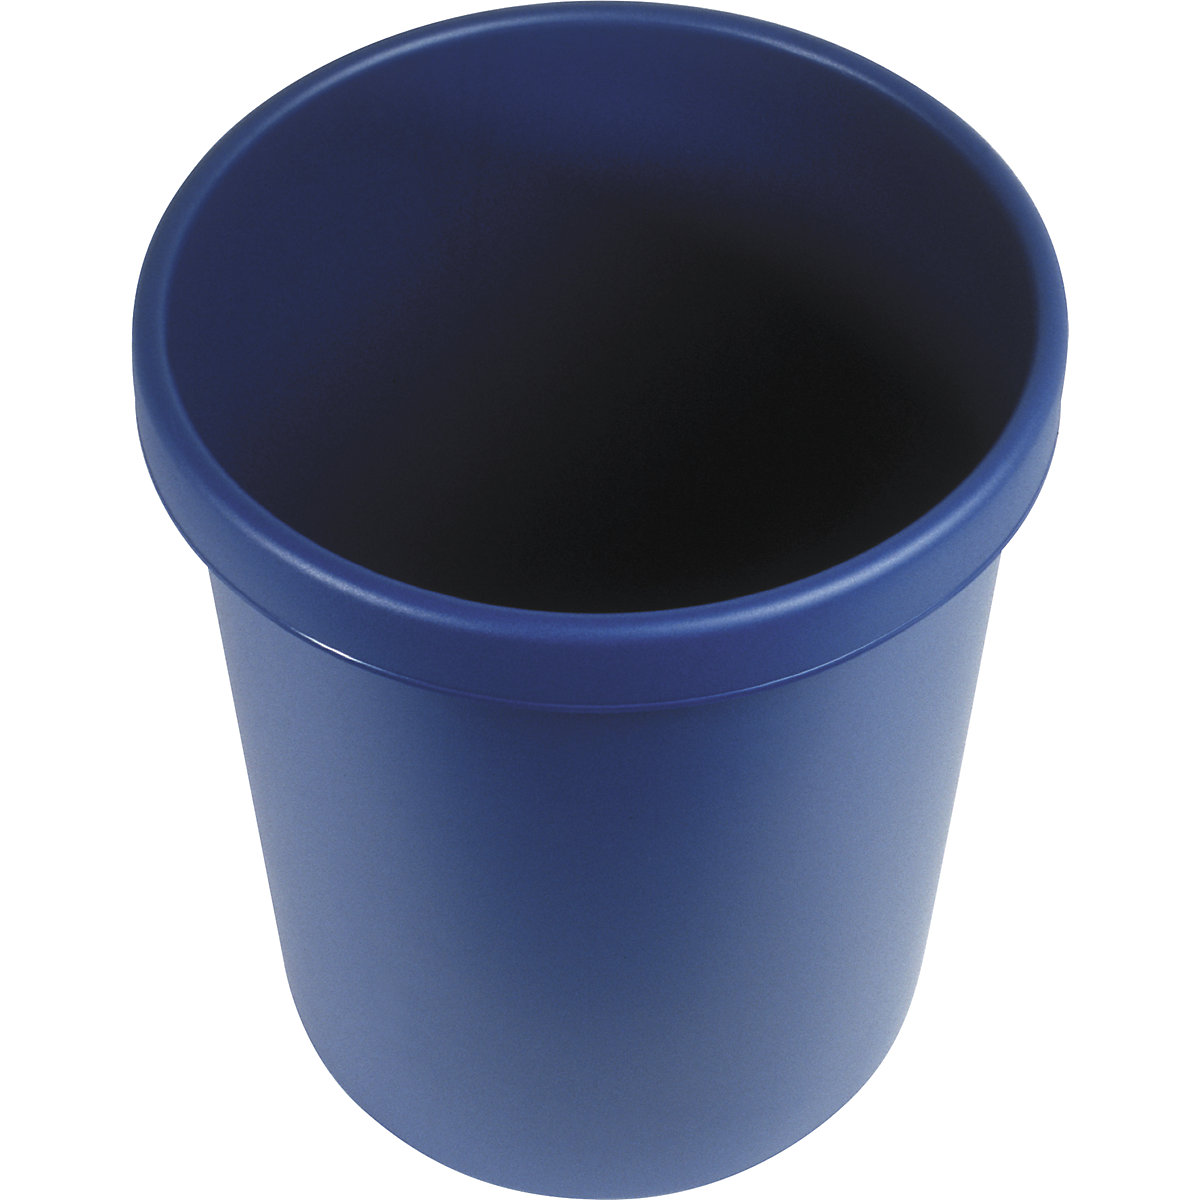 helit – Corbeille à papier en plastique, capacité 30 l, h x Ø 405 x 350 mm, bleu, lot de 5